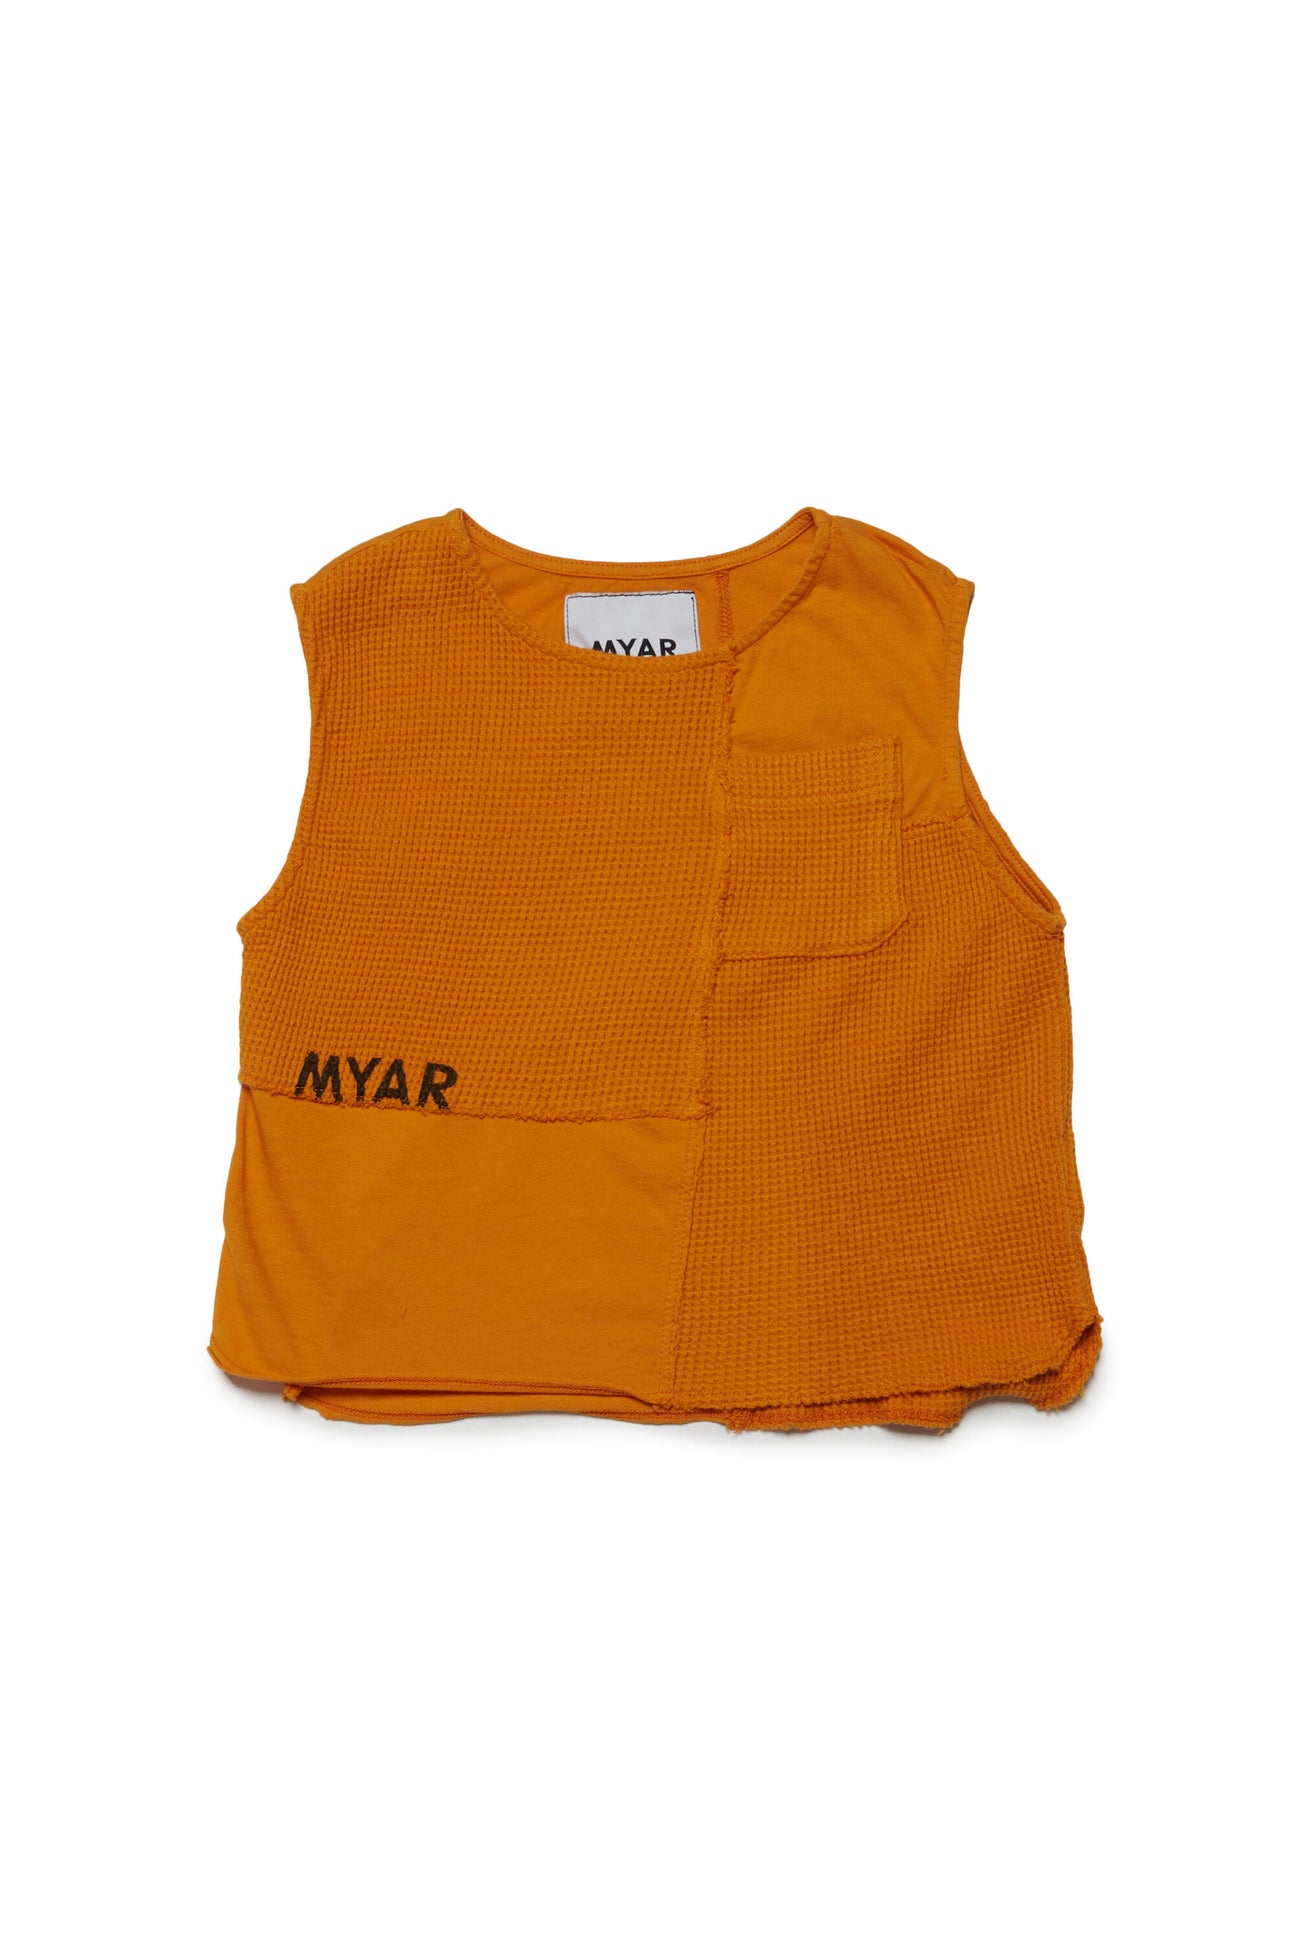 Camiseta en tejido deadstock con logotipo MYAR 